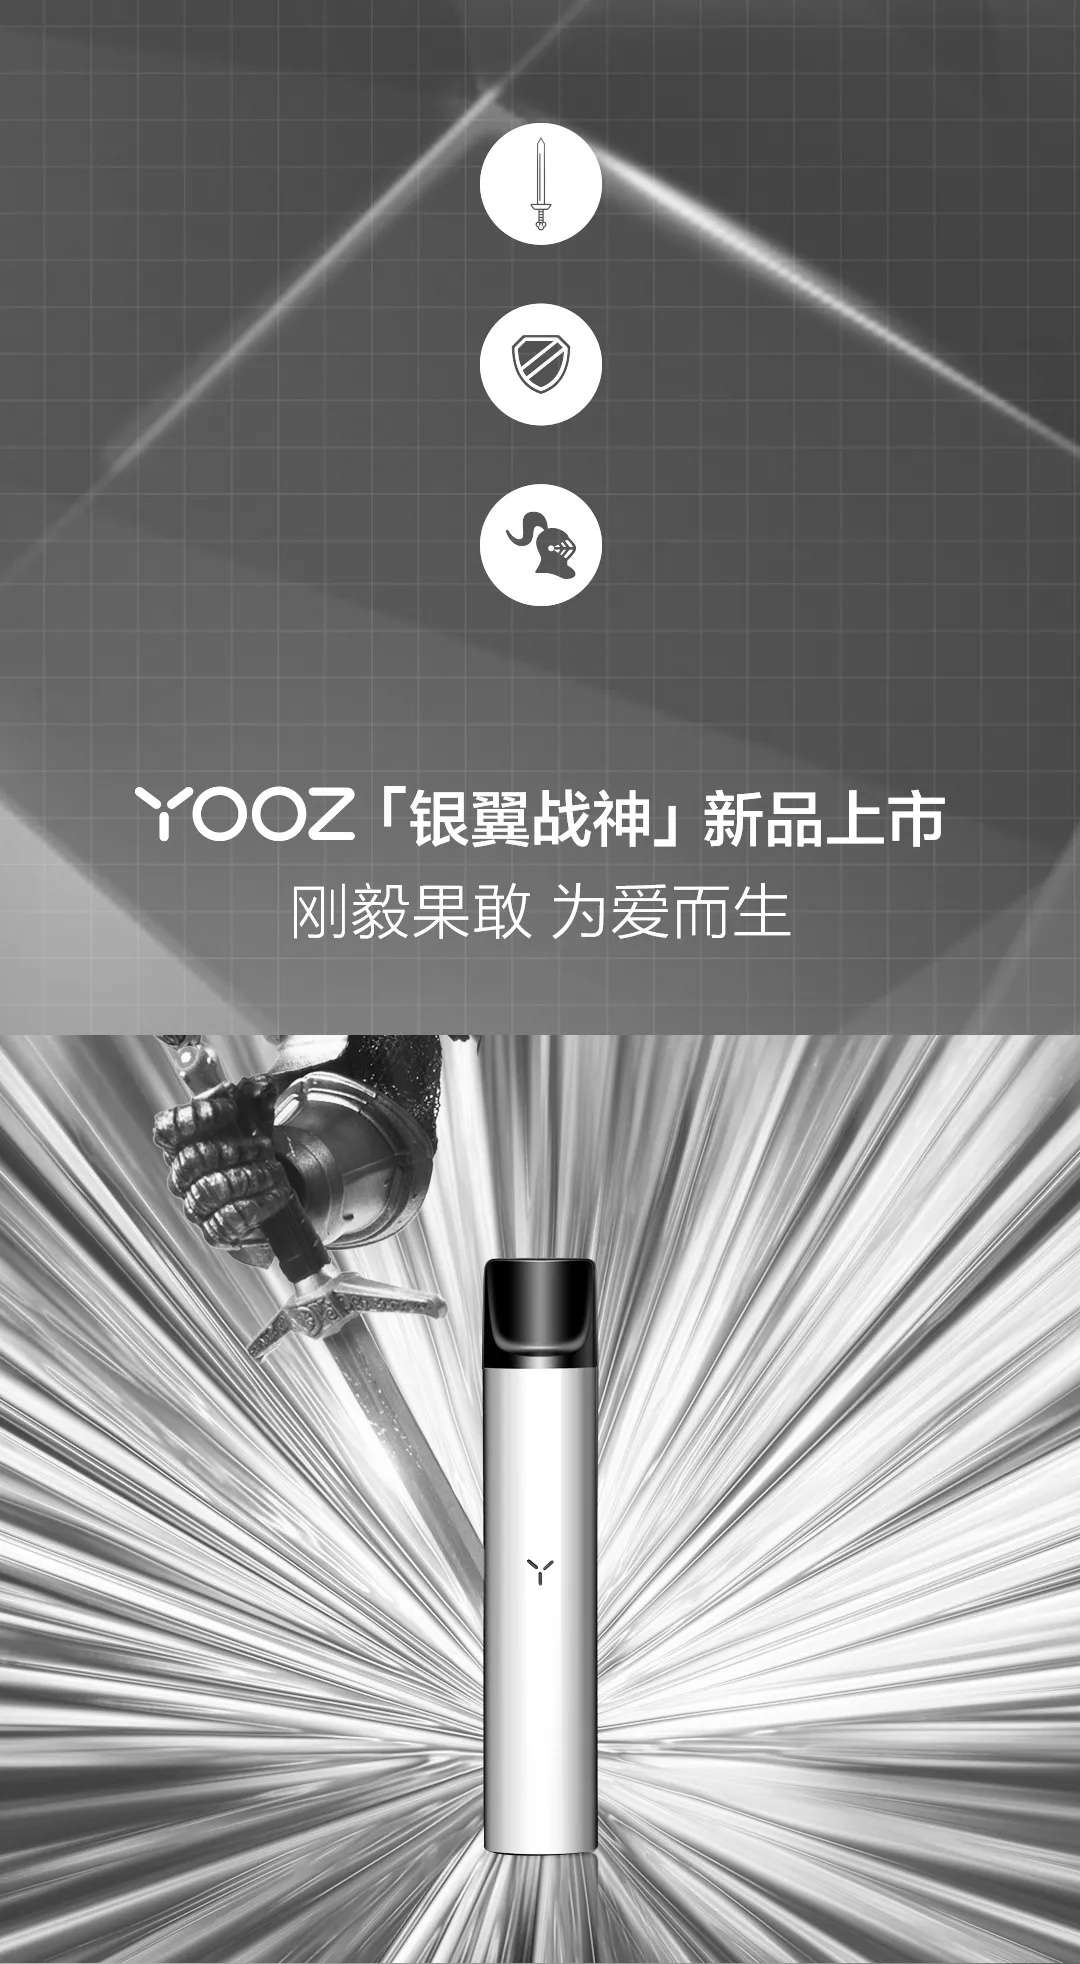 YOOZ柚子新品|银色高亮电子烟主机『银翼战神』上市